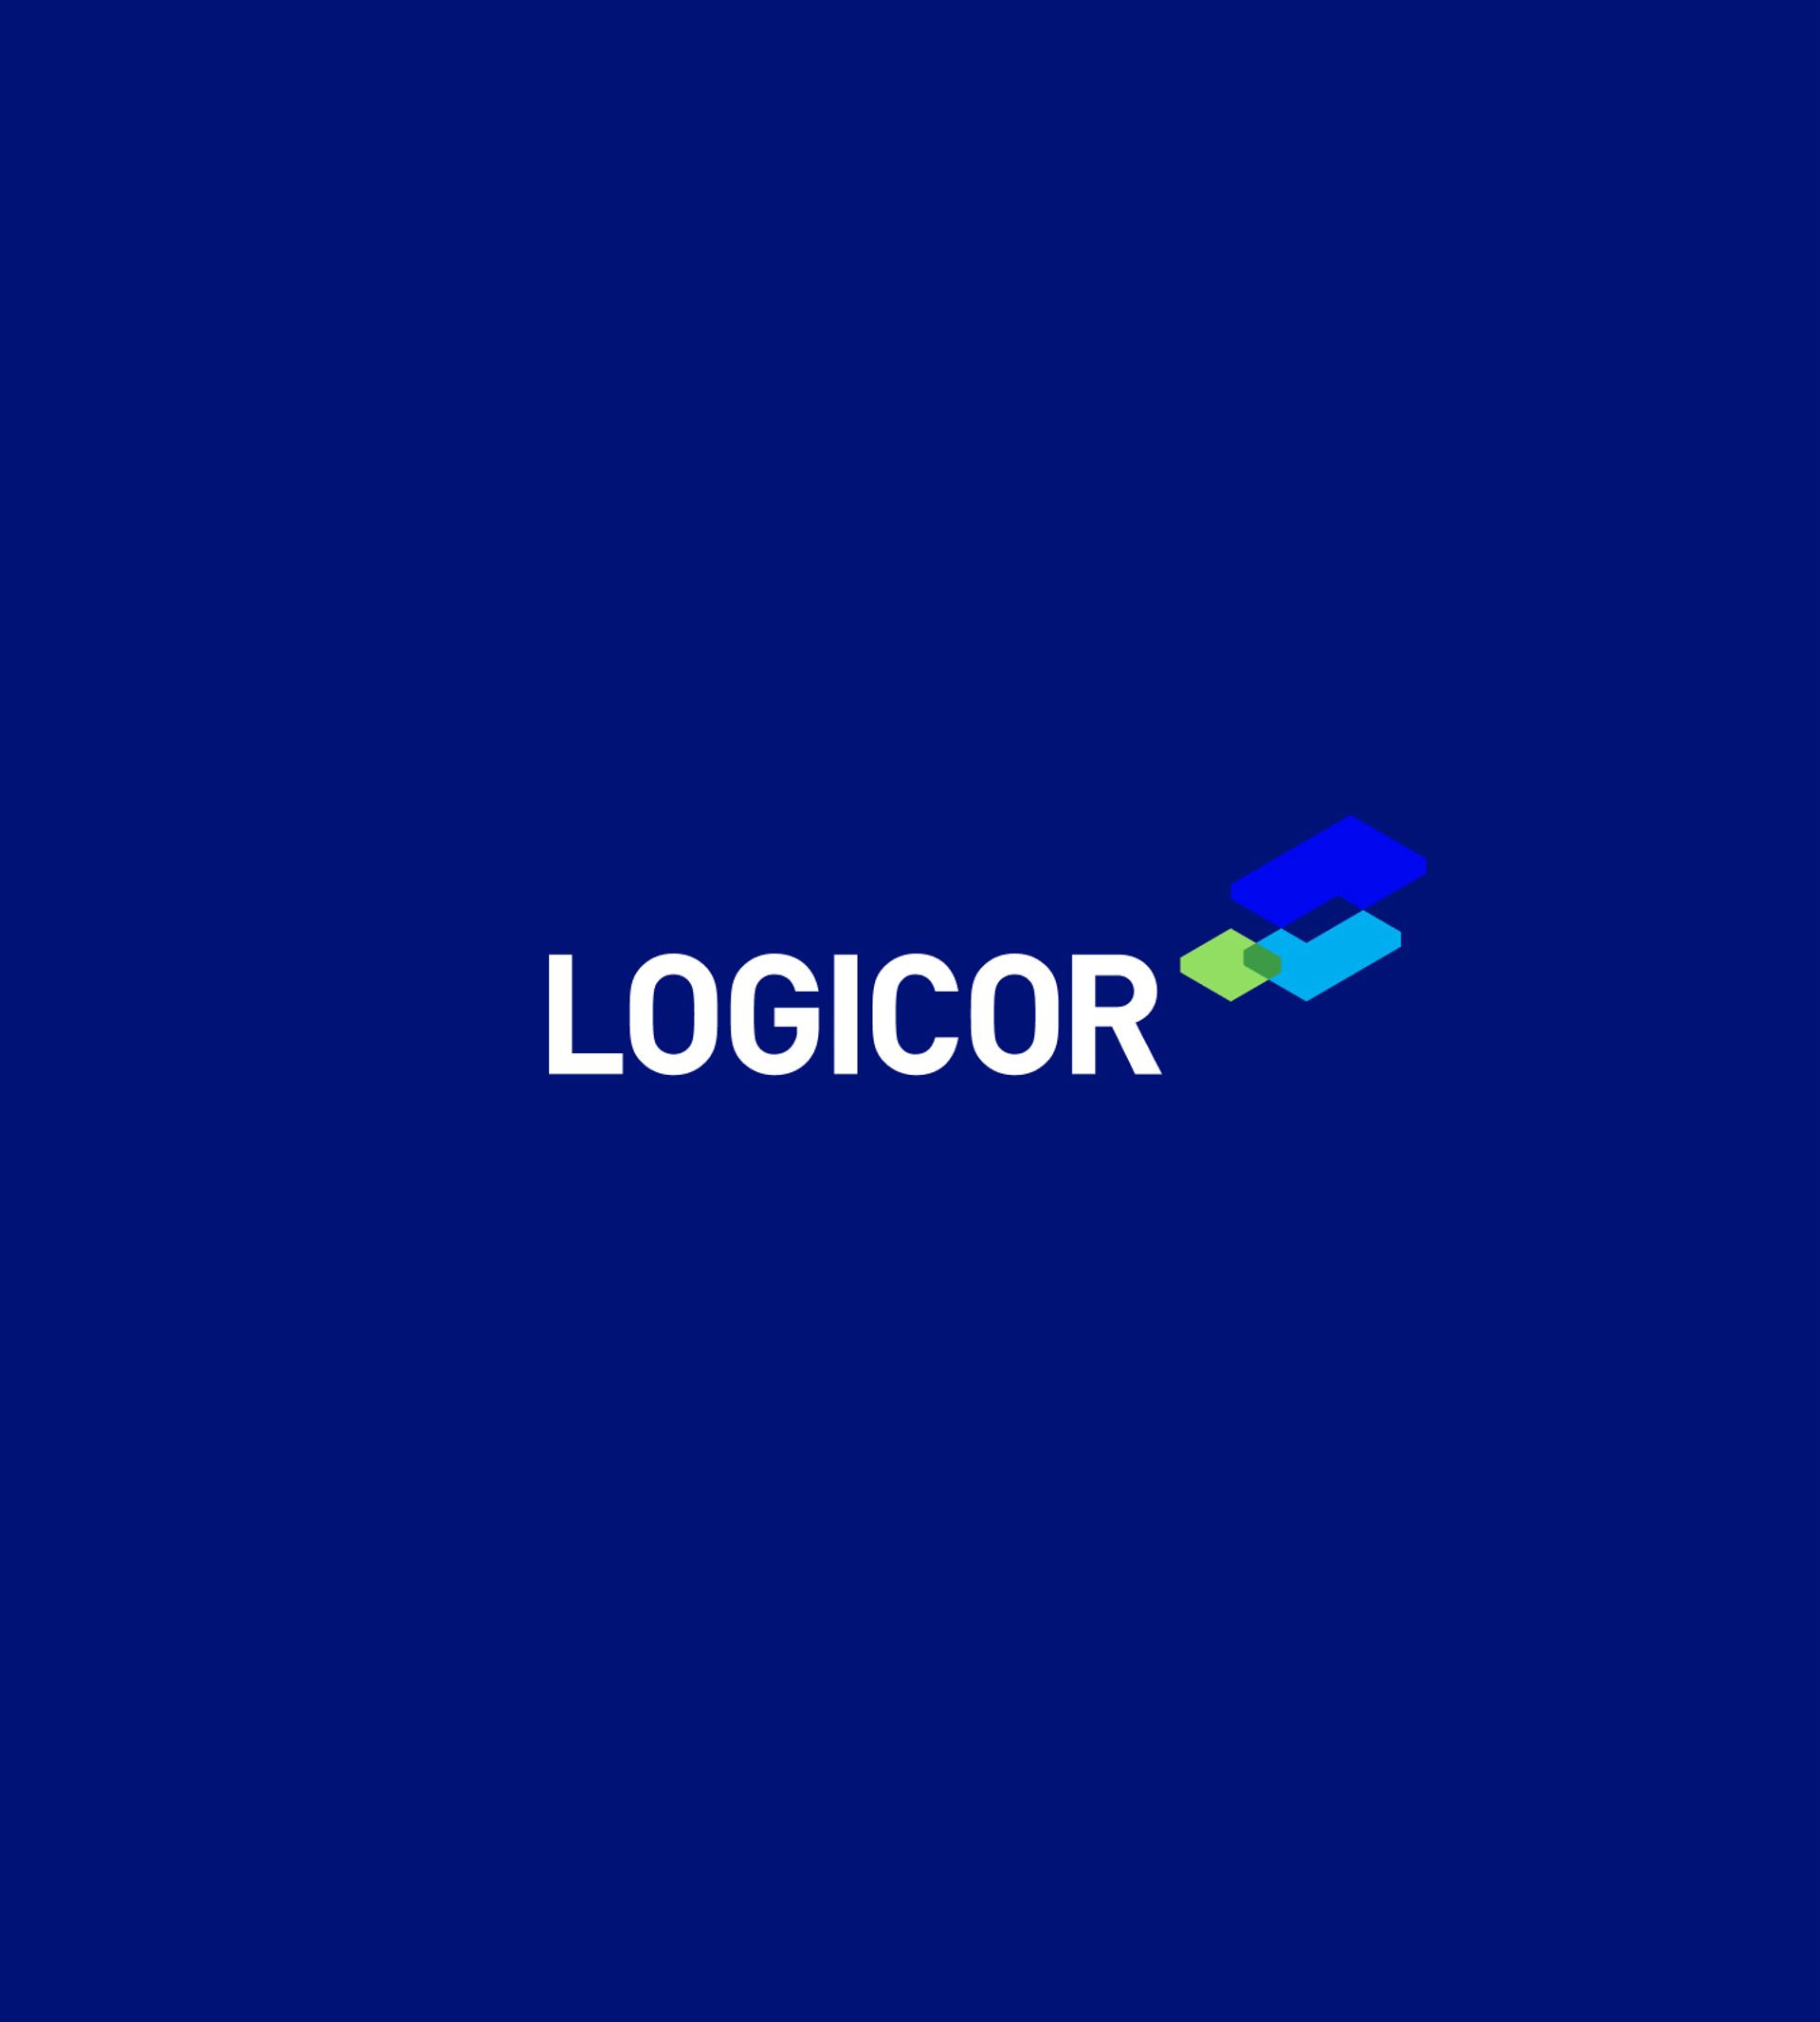 logicor logo blue background